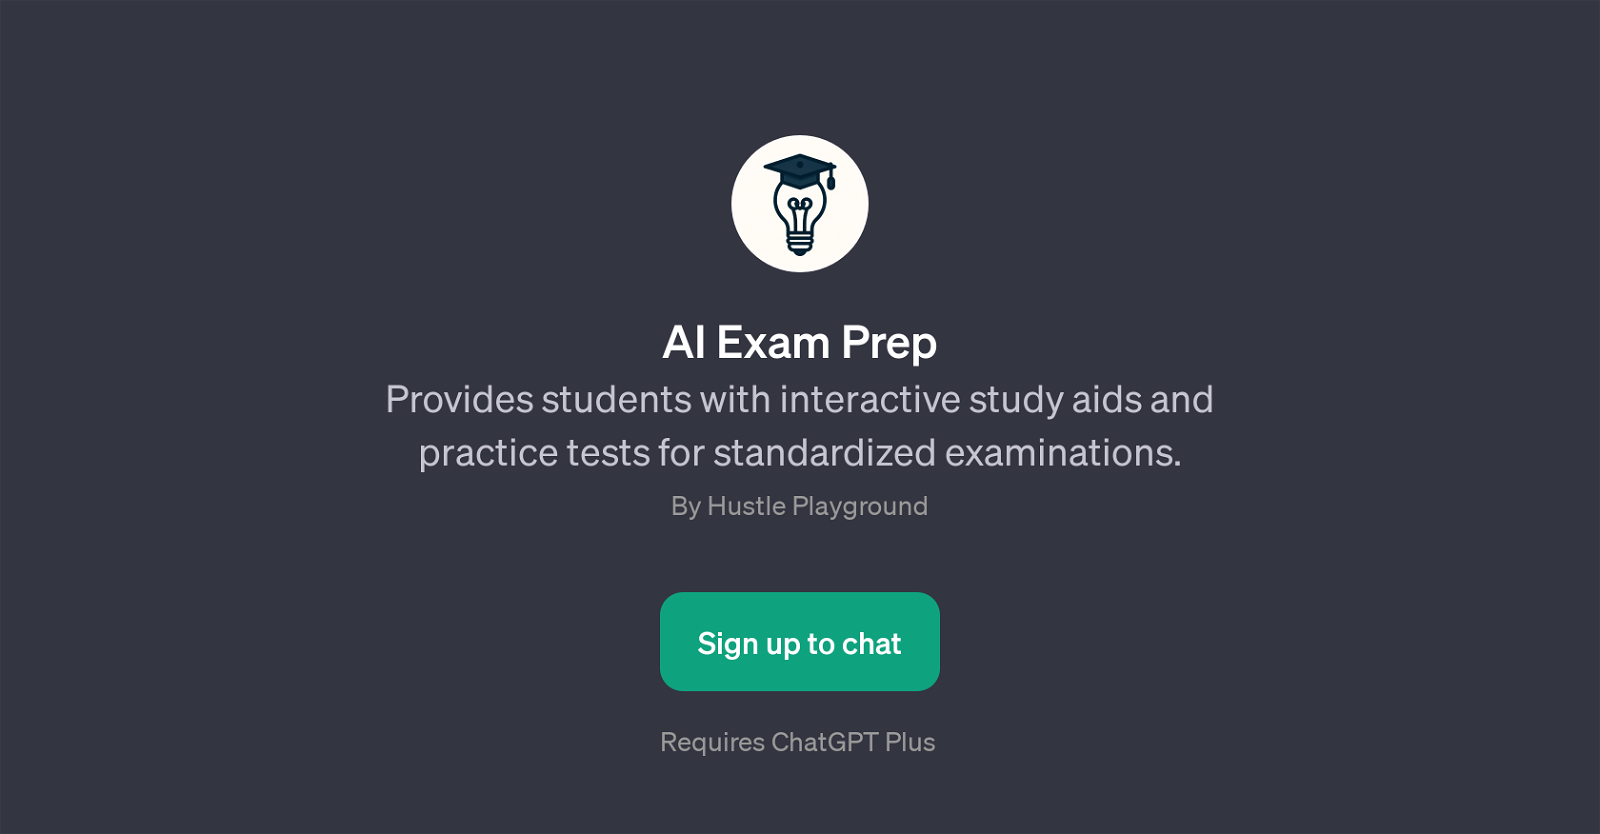 AI Exam Prep website